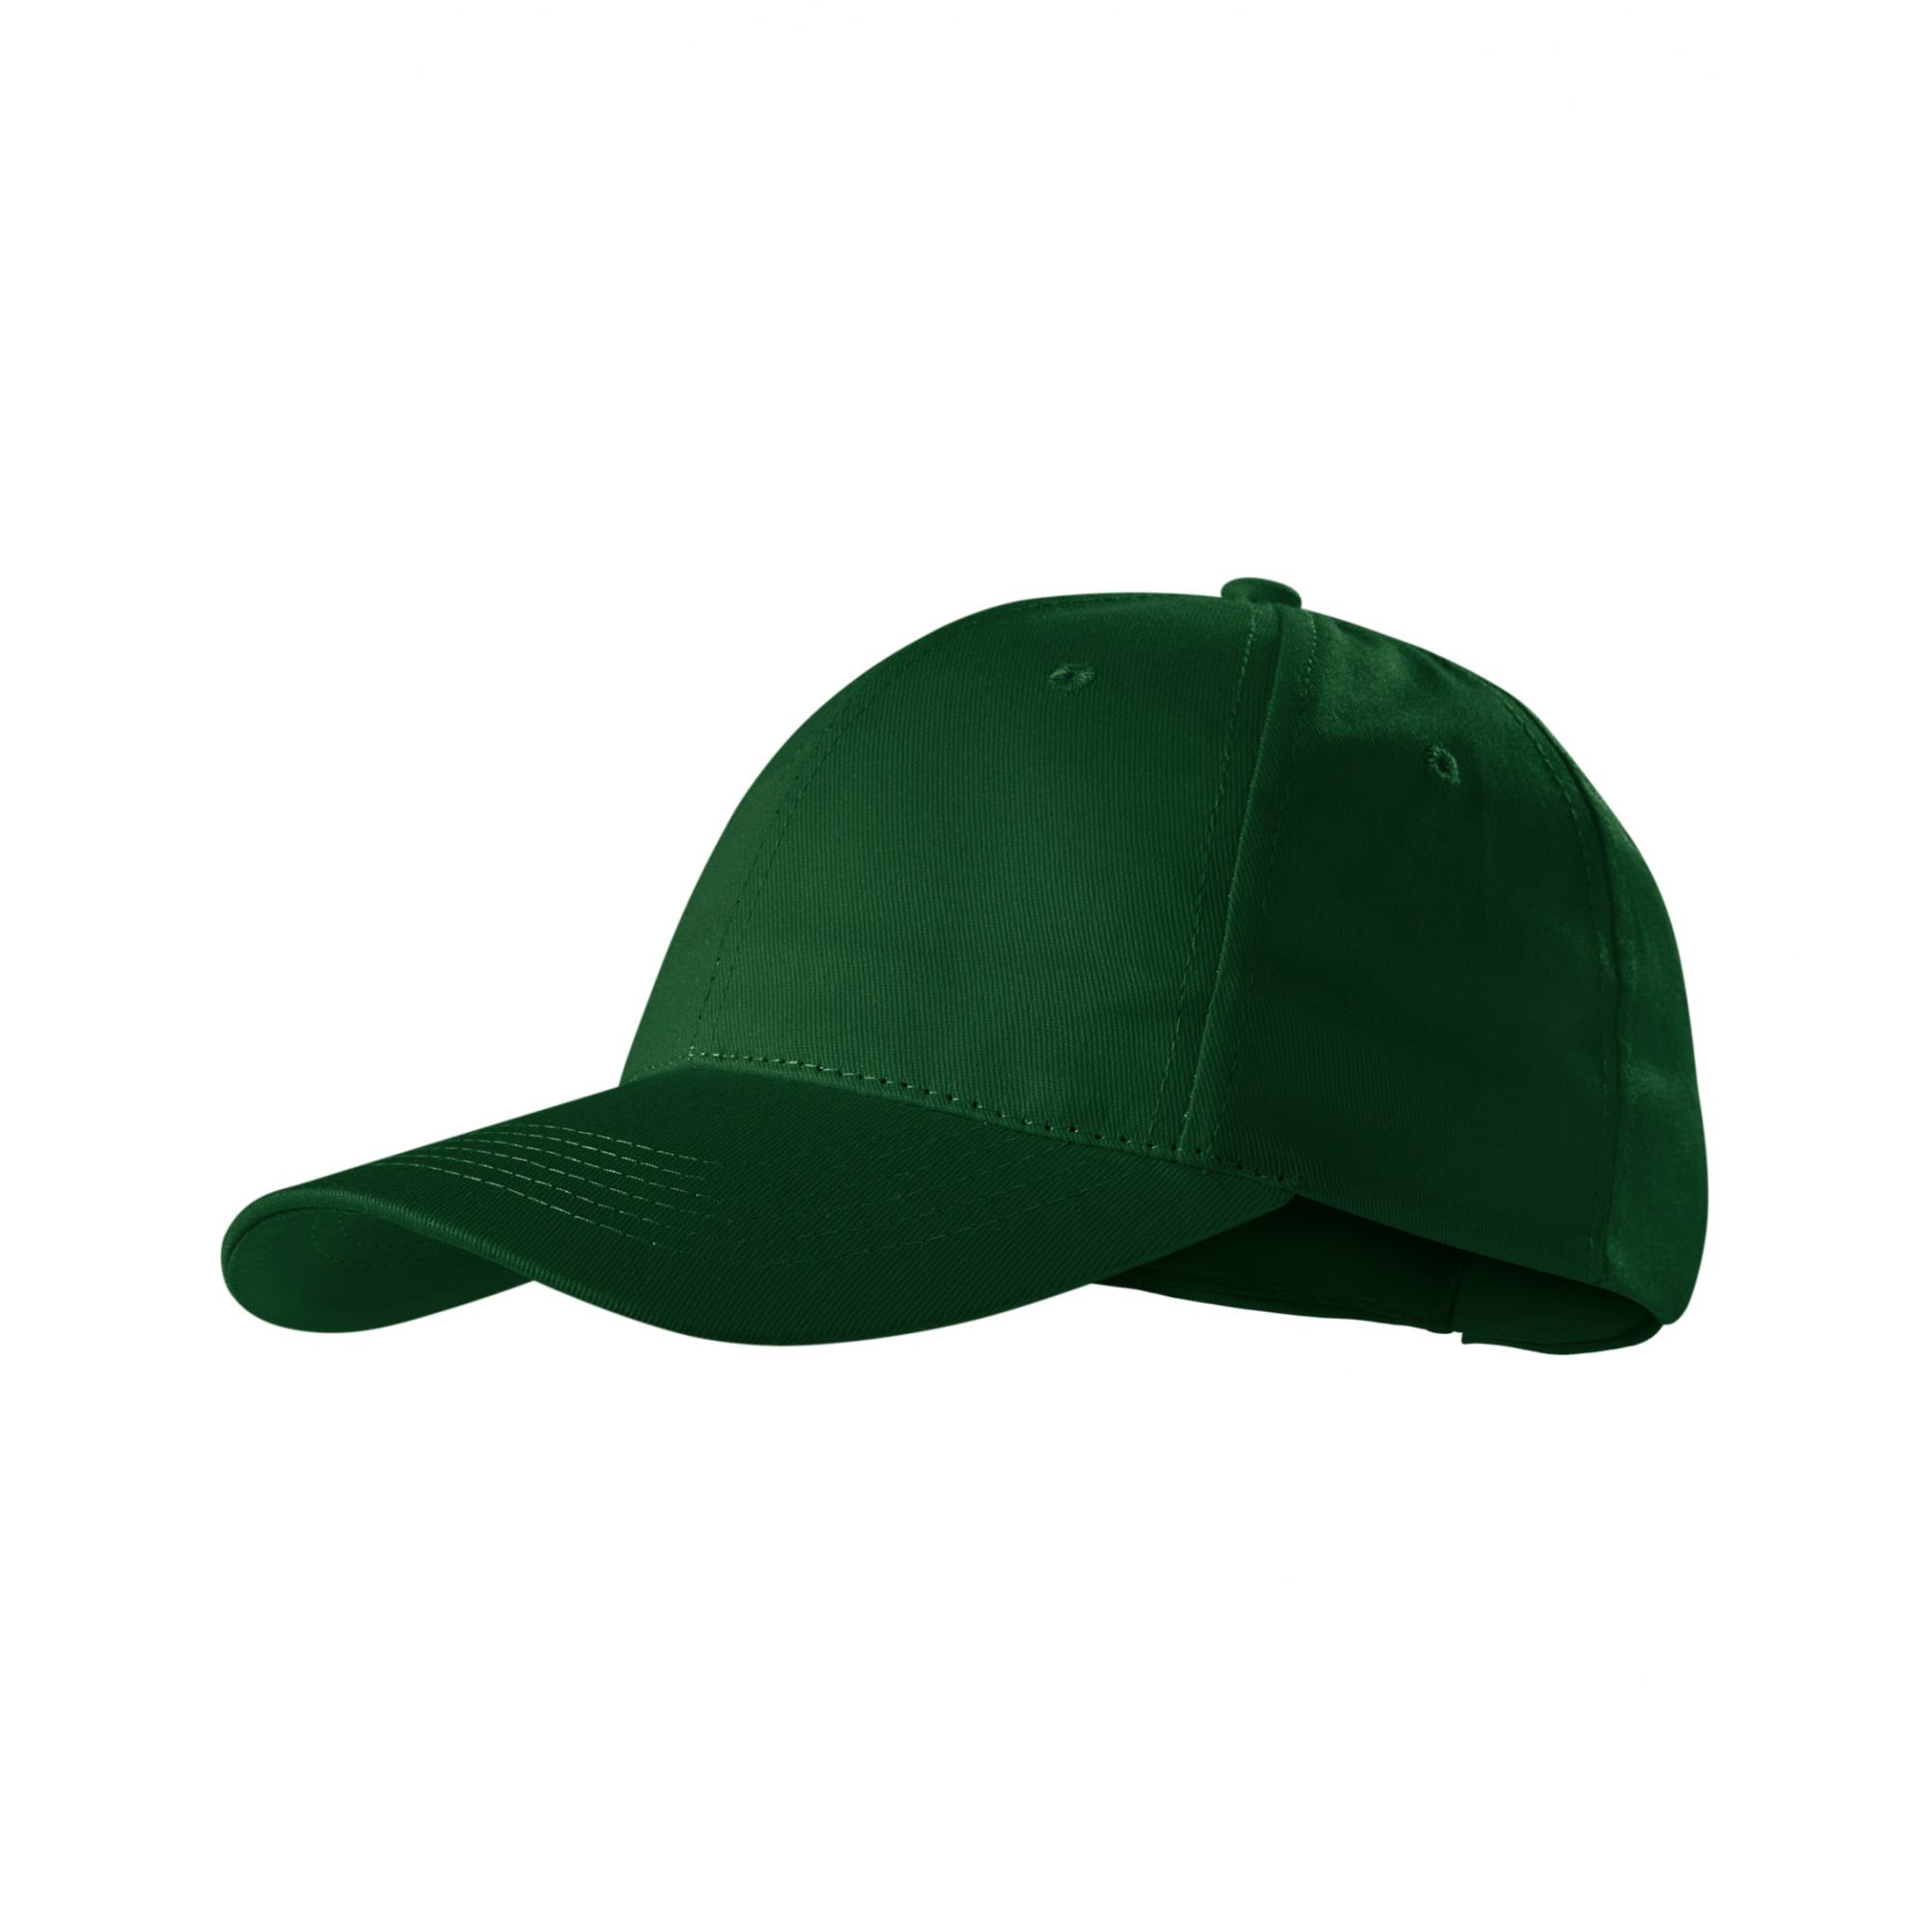 Şapcă unisex Sunshine P31 Verde sticla